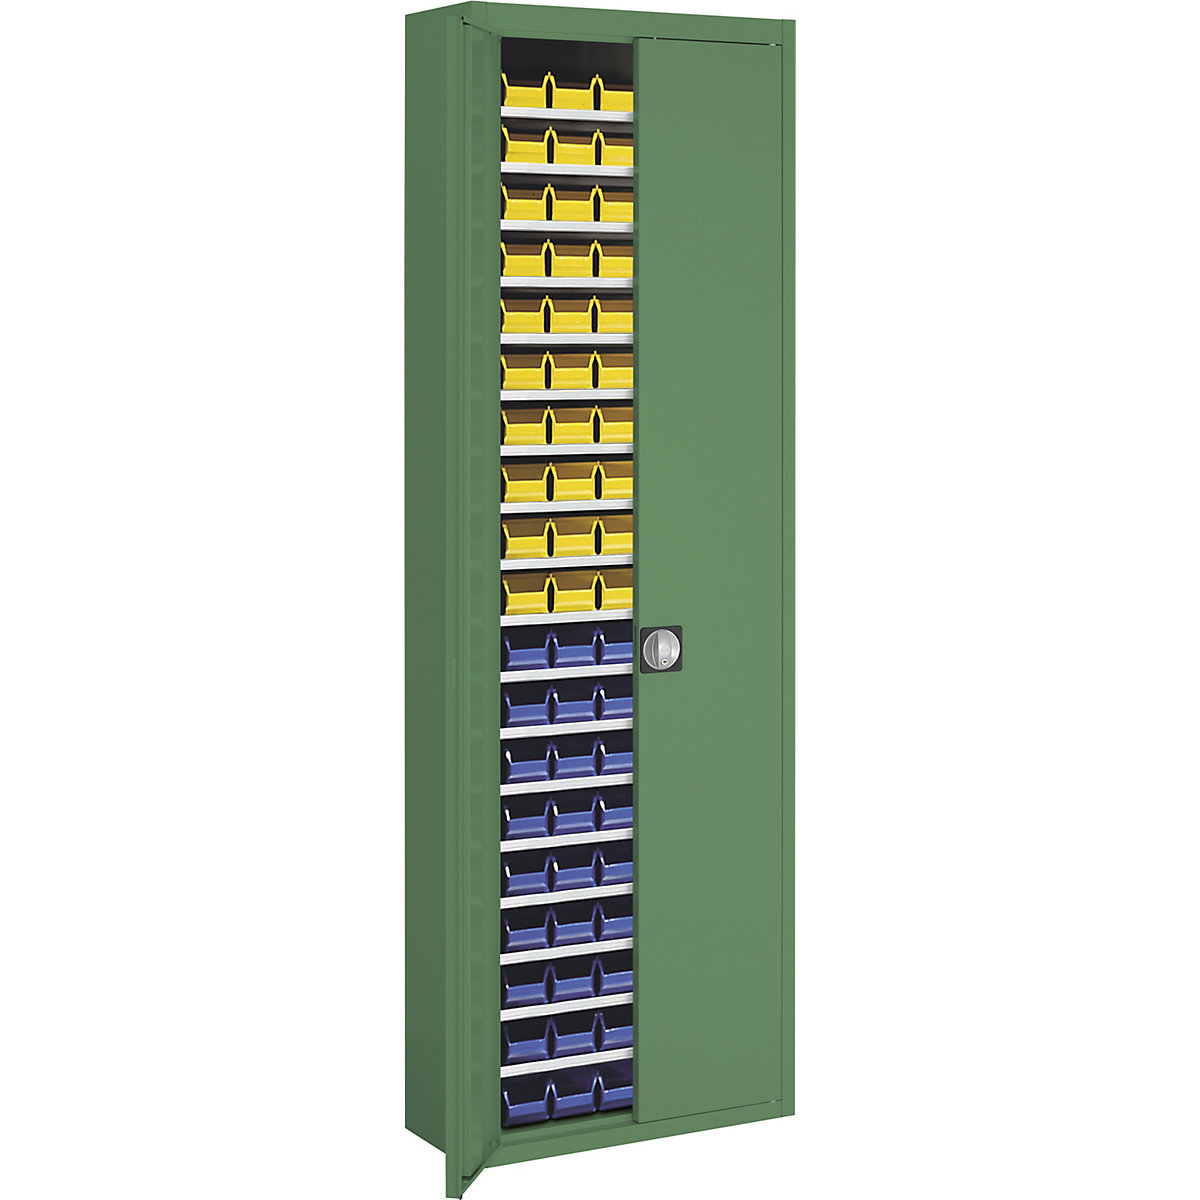 Skladová skříň s přepravkami s viditelným obsahem – mauser, v x š x h 2150 x 680 x 280 mm, jednobarevné, zelená, 114 přepravek-11